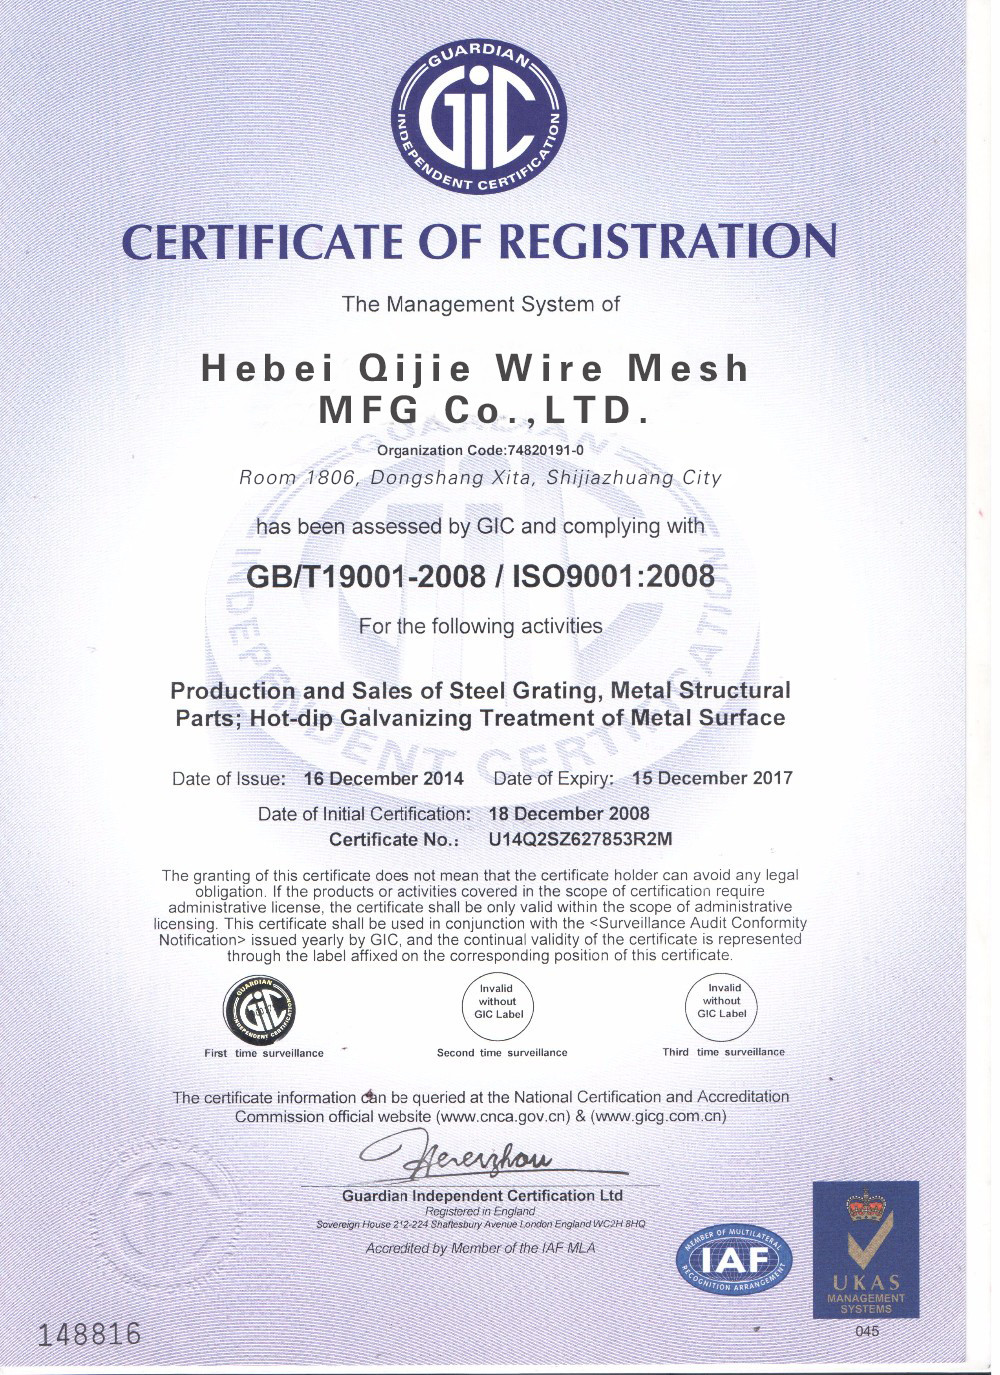 중국 Hebei Qijie Wire Mesh MFG Co., Ltd 인증